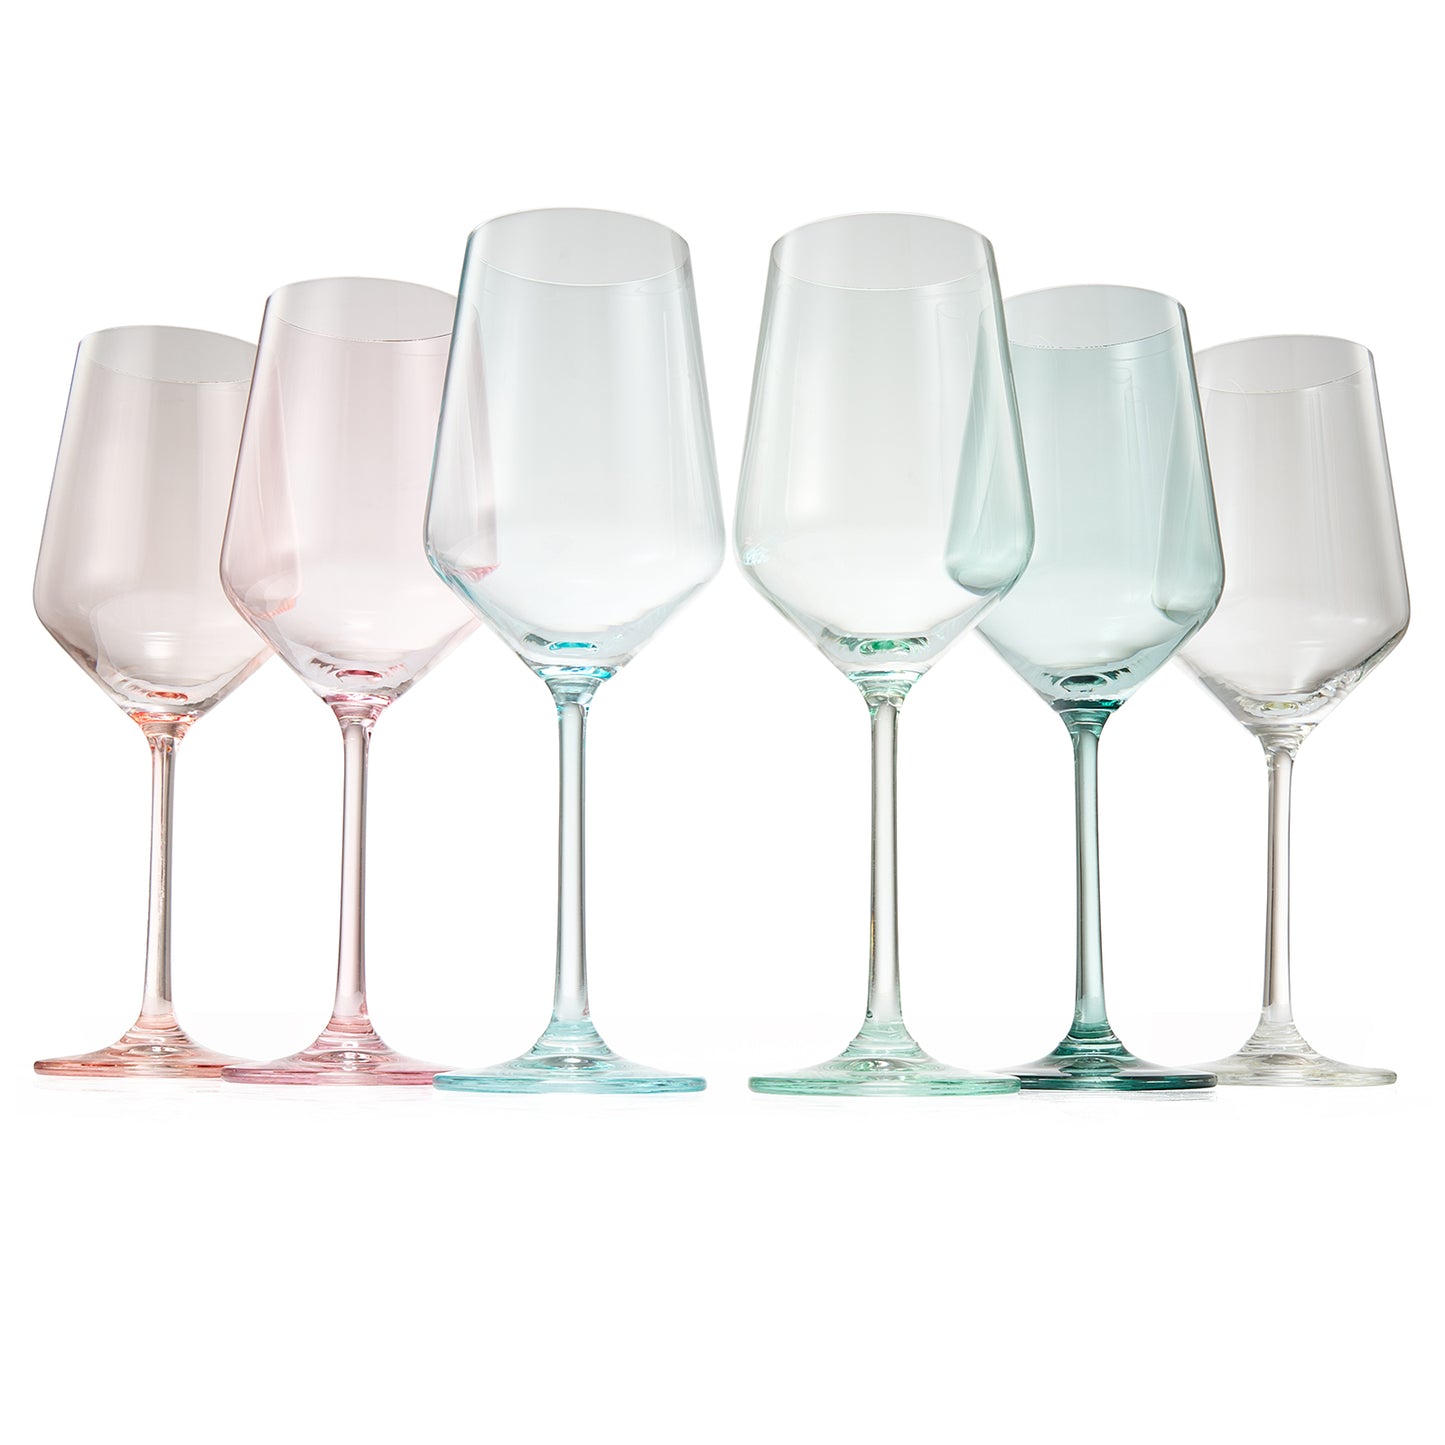 Colorata Wine Glassware, Set of 6